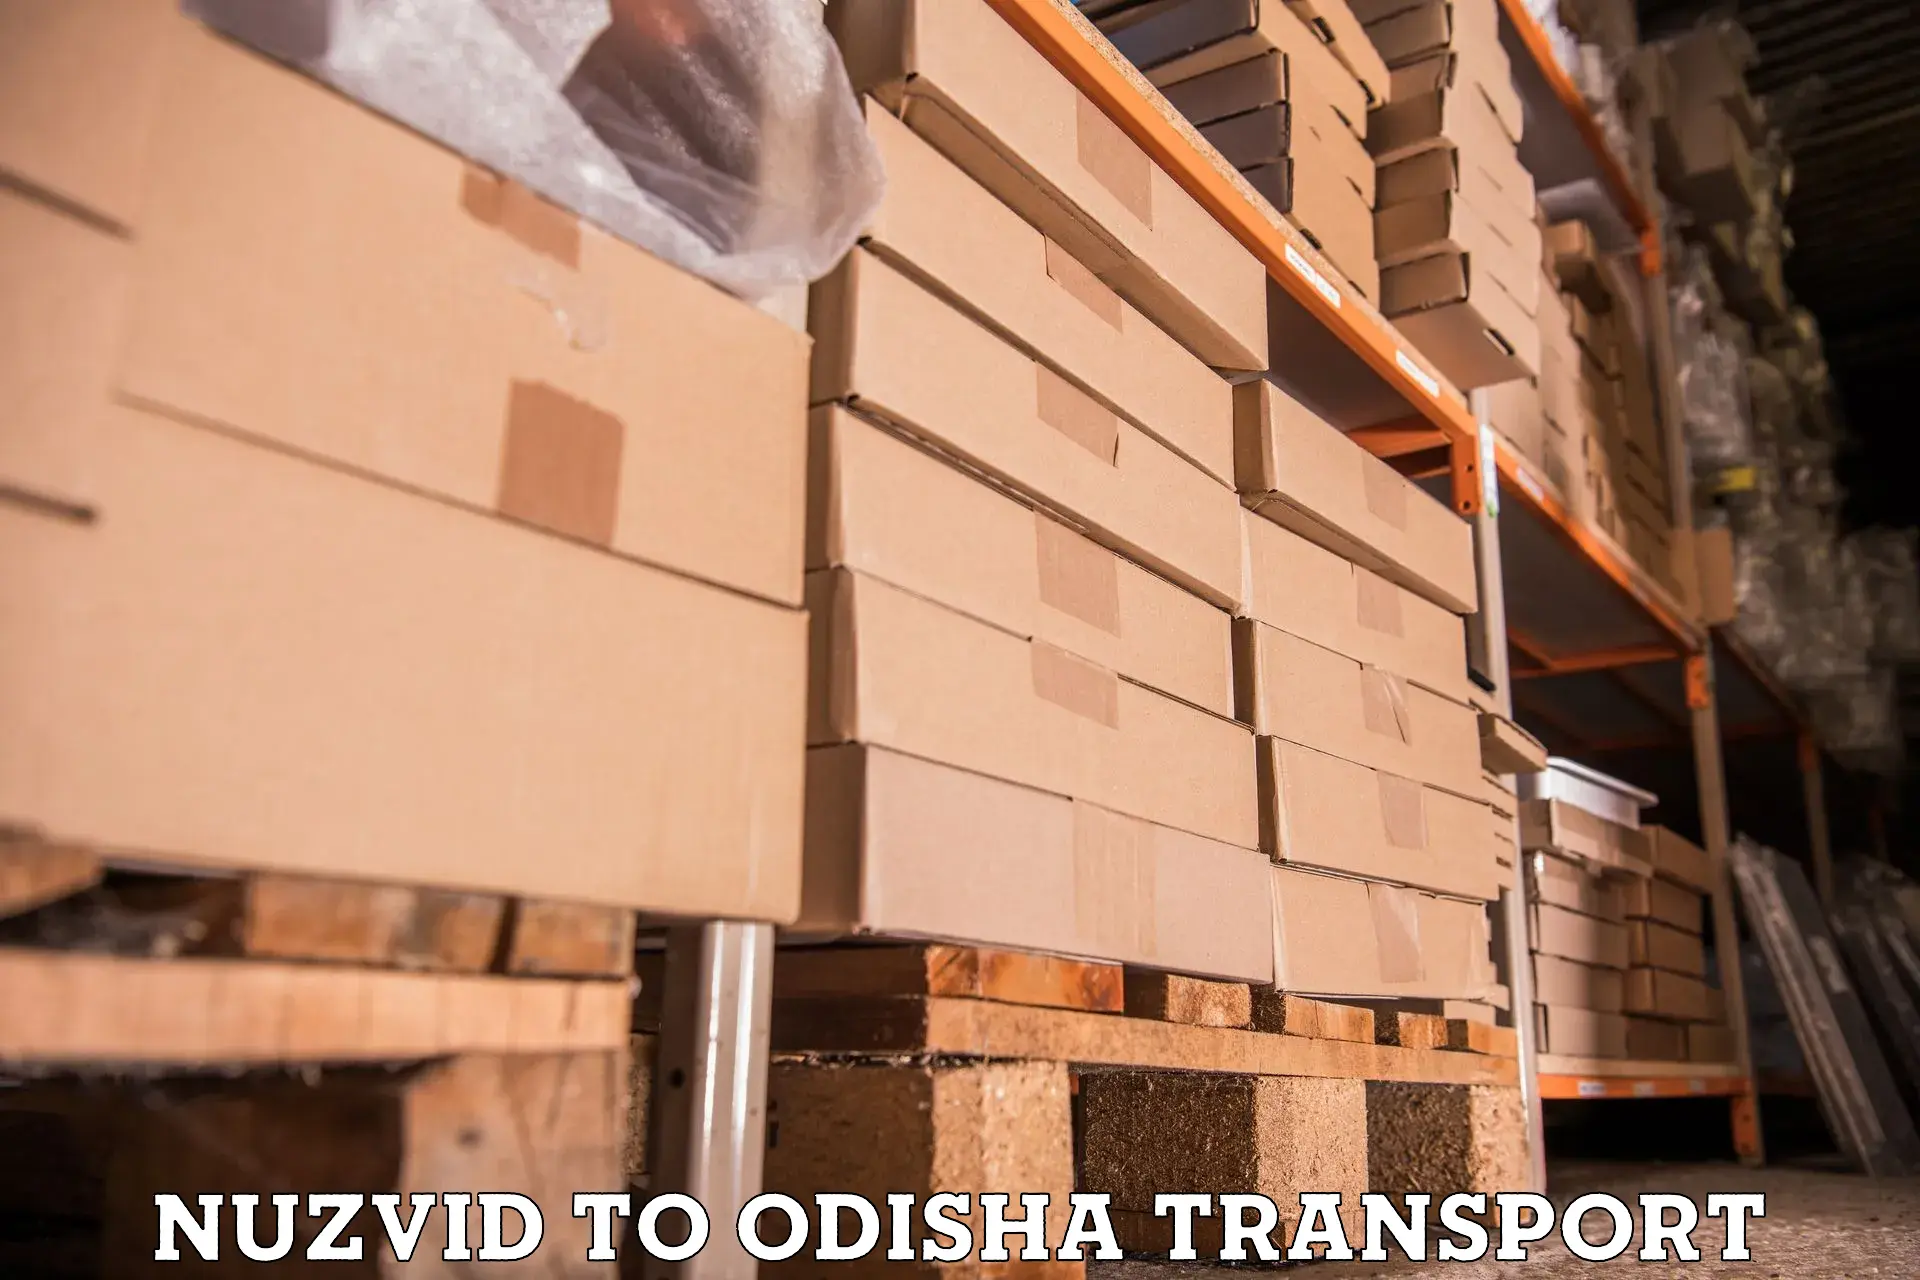 Transport in sharing Nuzvid to Mohana